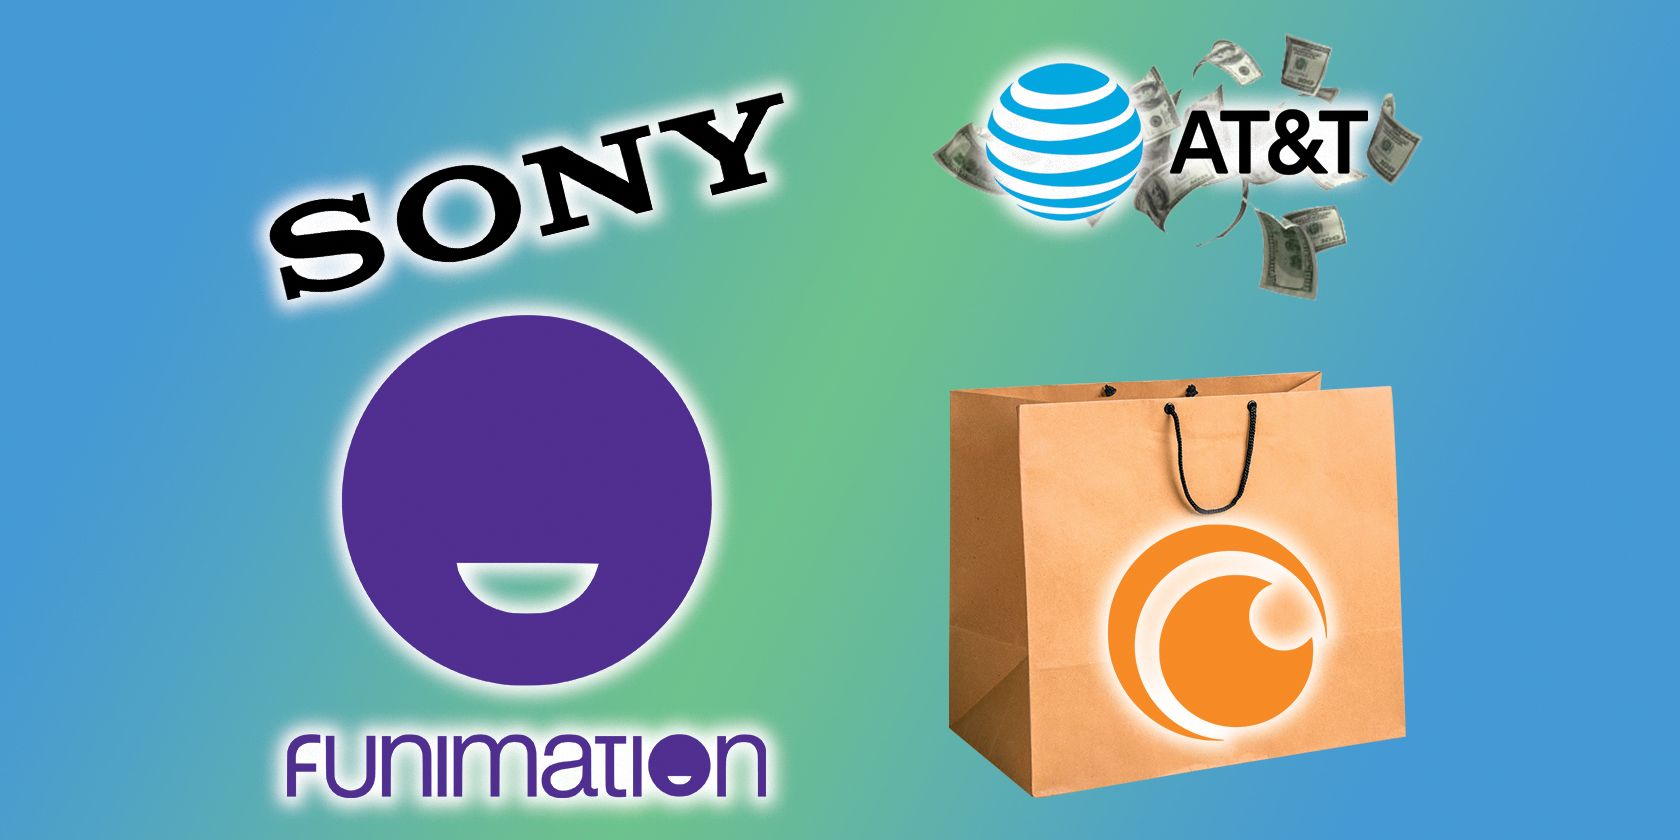 sony funimation buys crunchyroll at&t